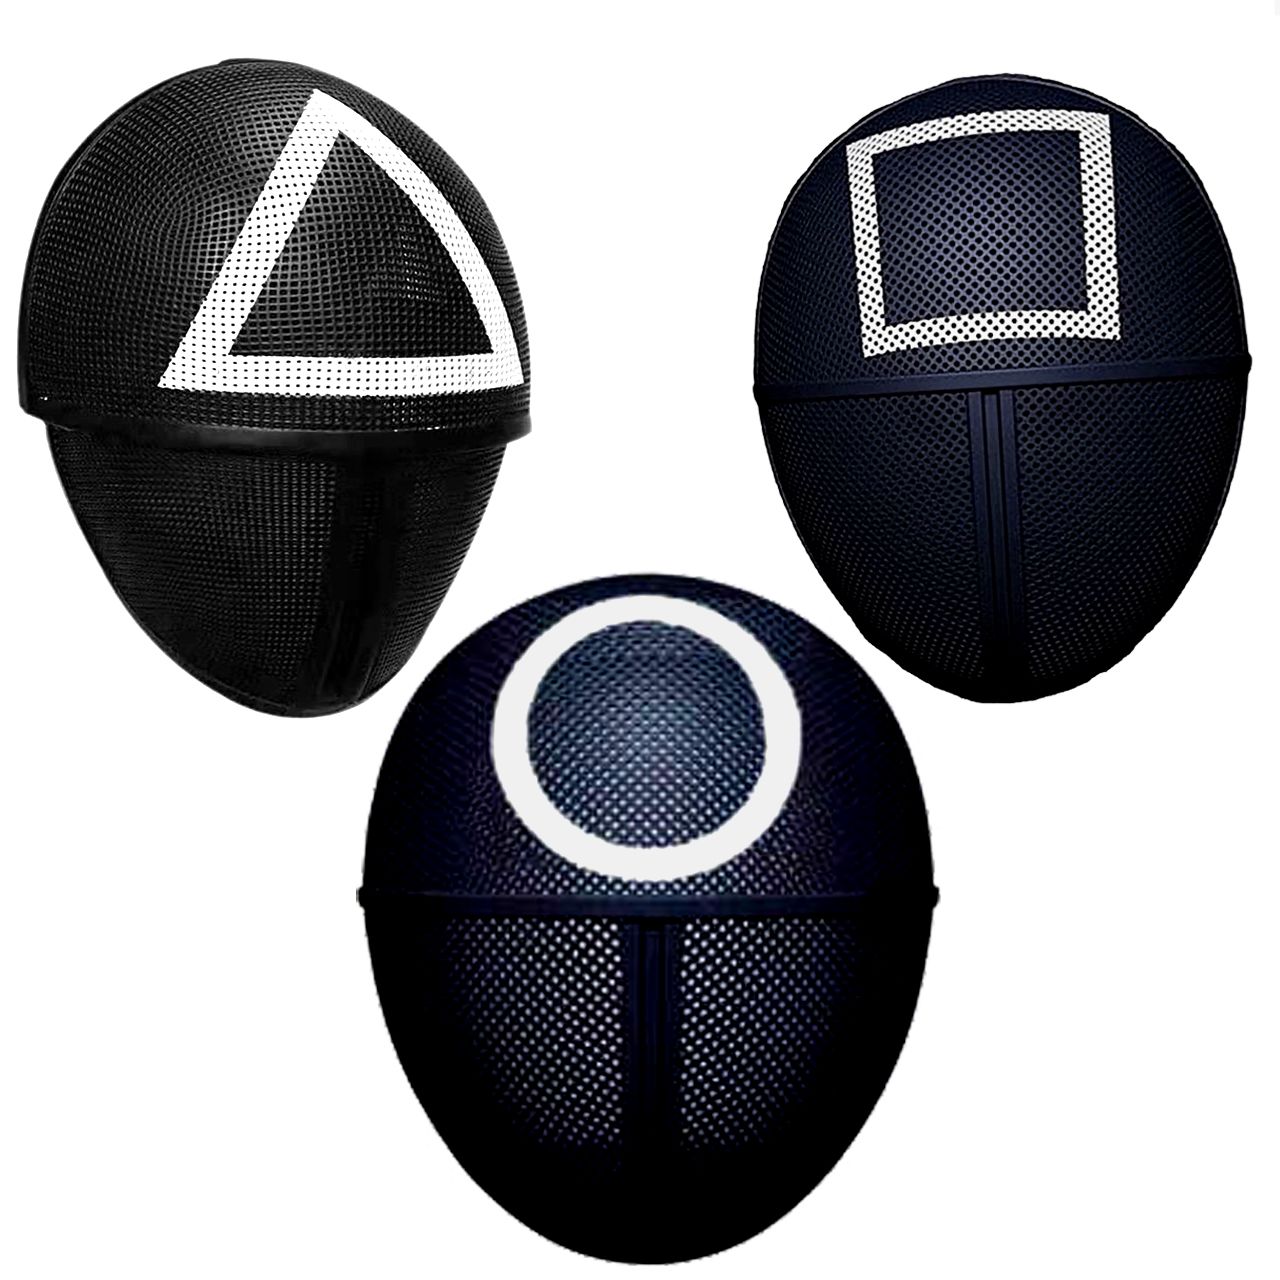 ماسک ایفای نقش دنیای سرگرمی های کمیاب مدل ماسکهای بازی مرکب مجموعه 3 عددی -  - 1